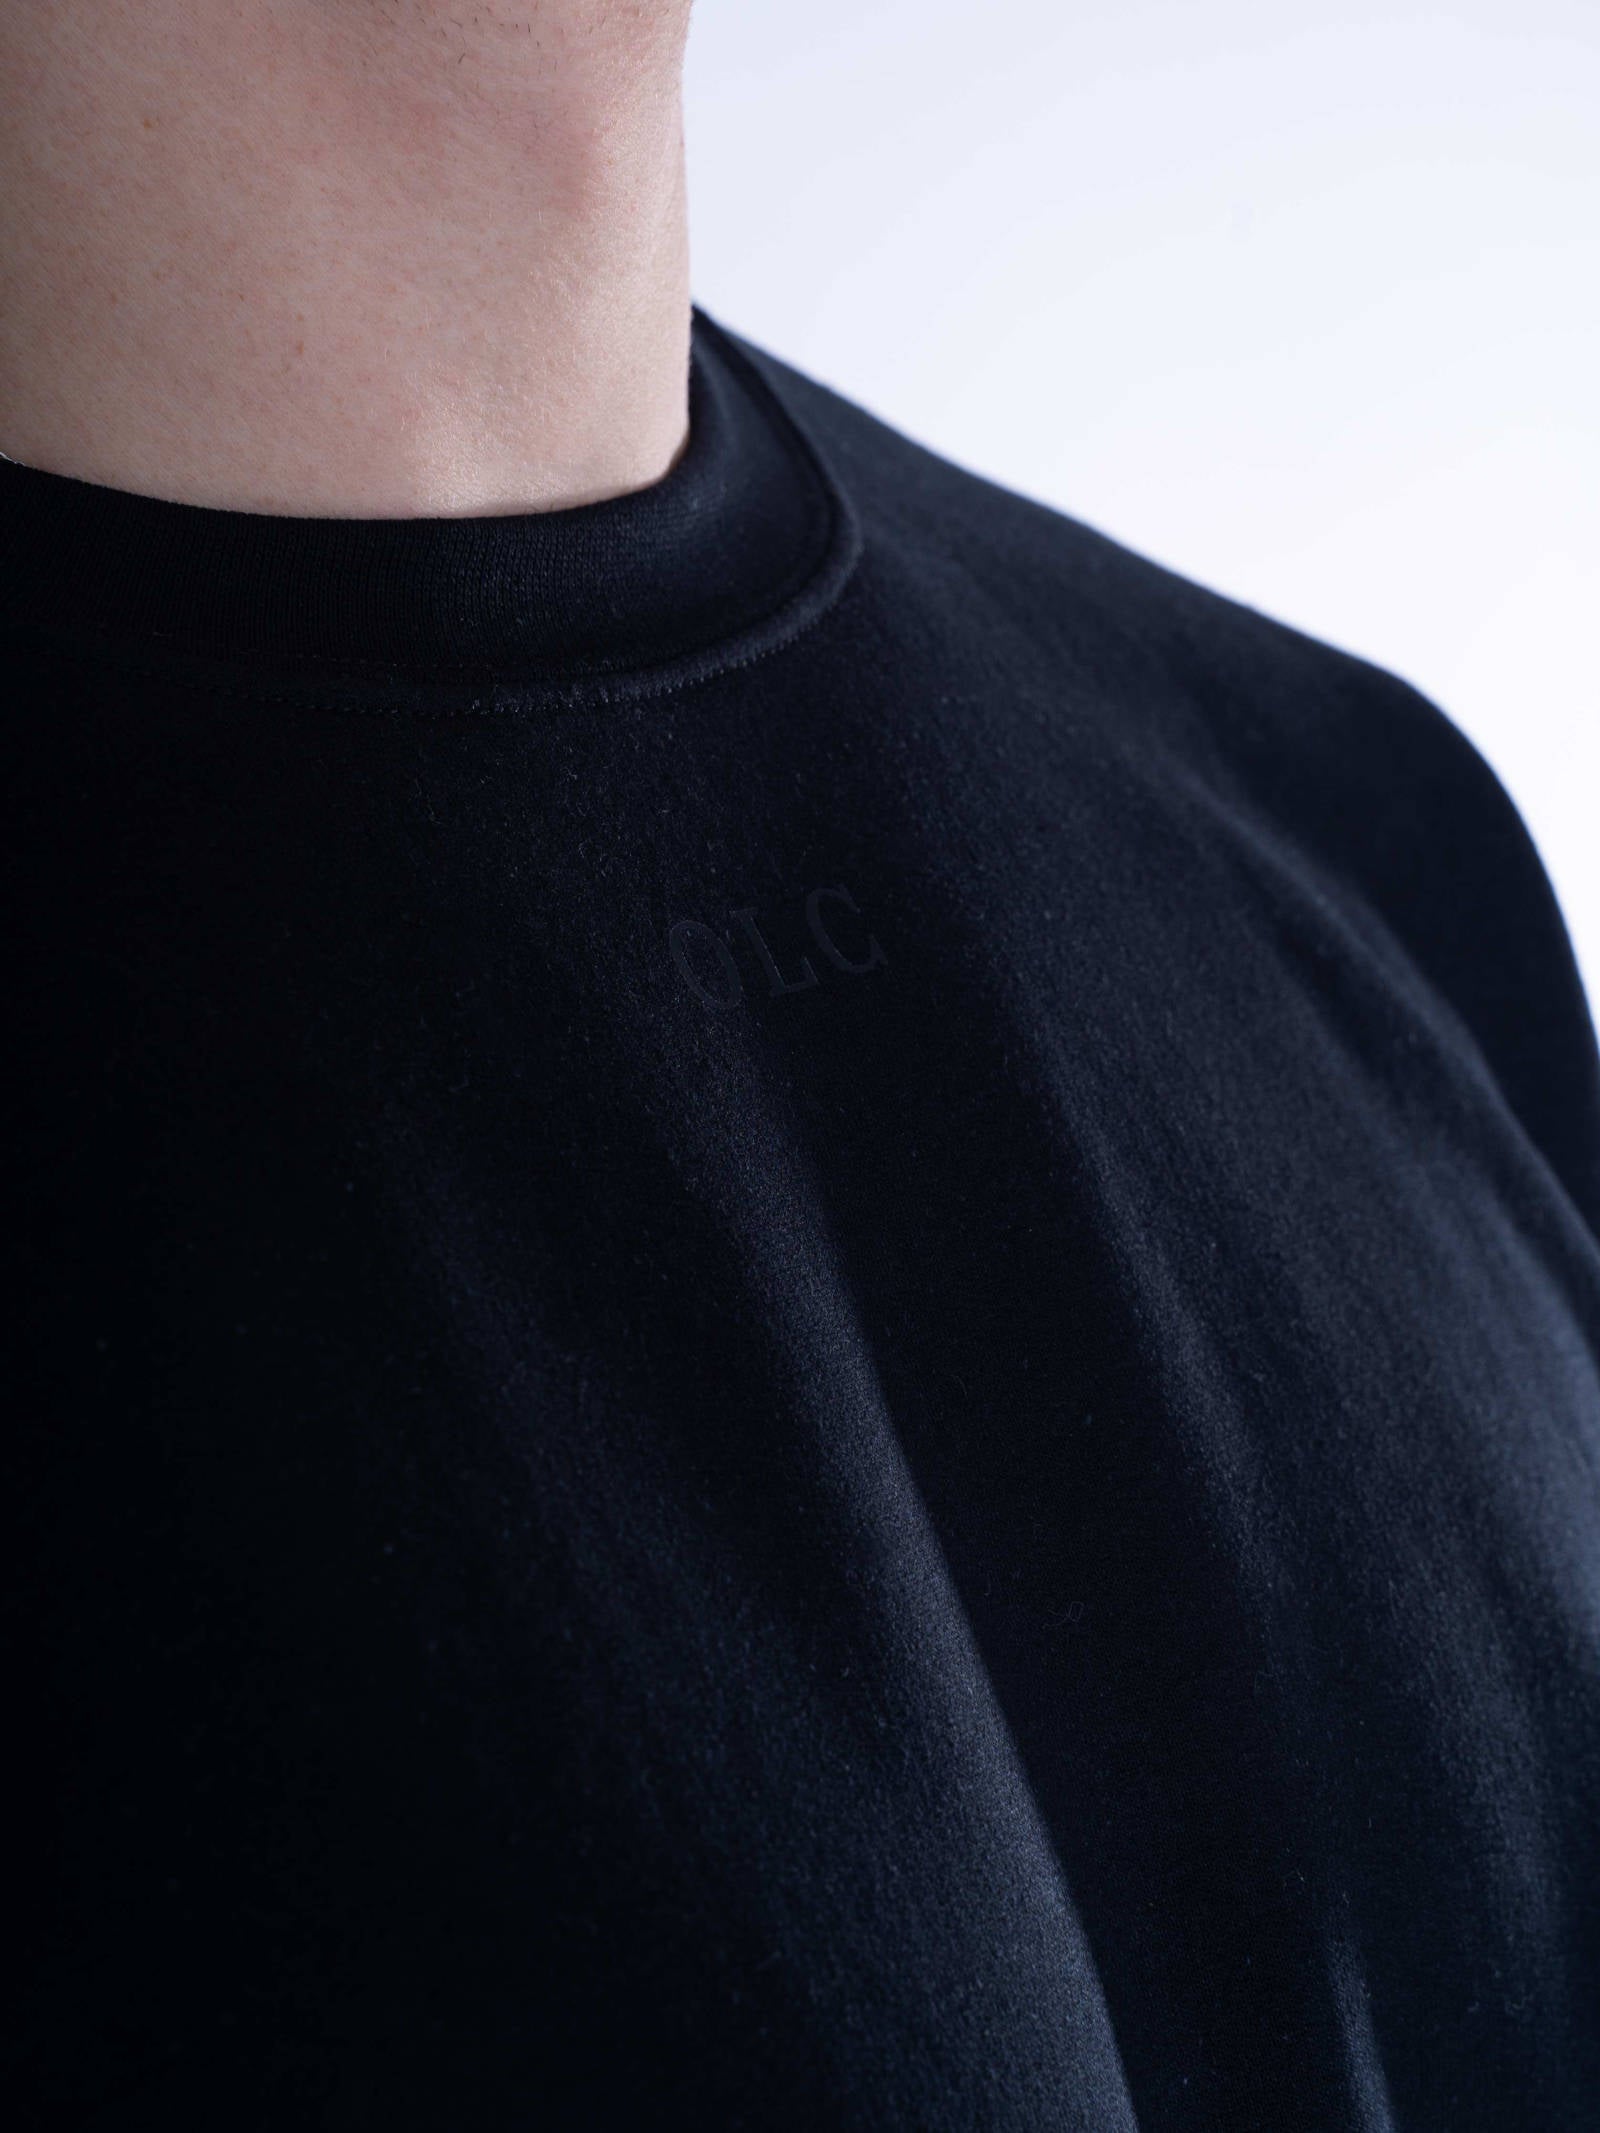 NEAT Sweatshirt - Black/White